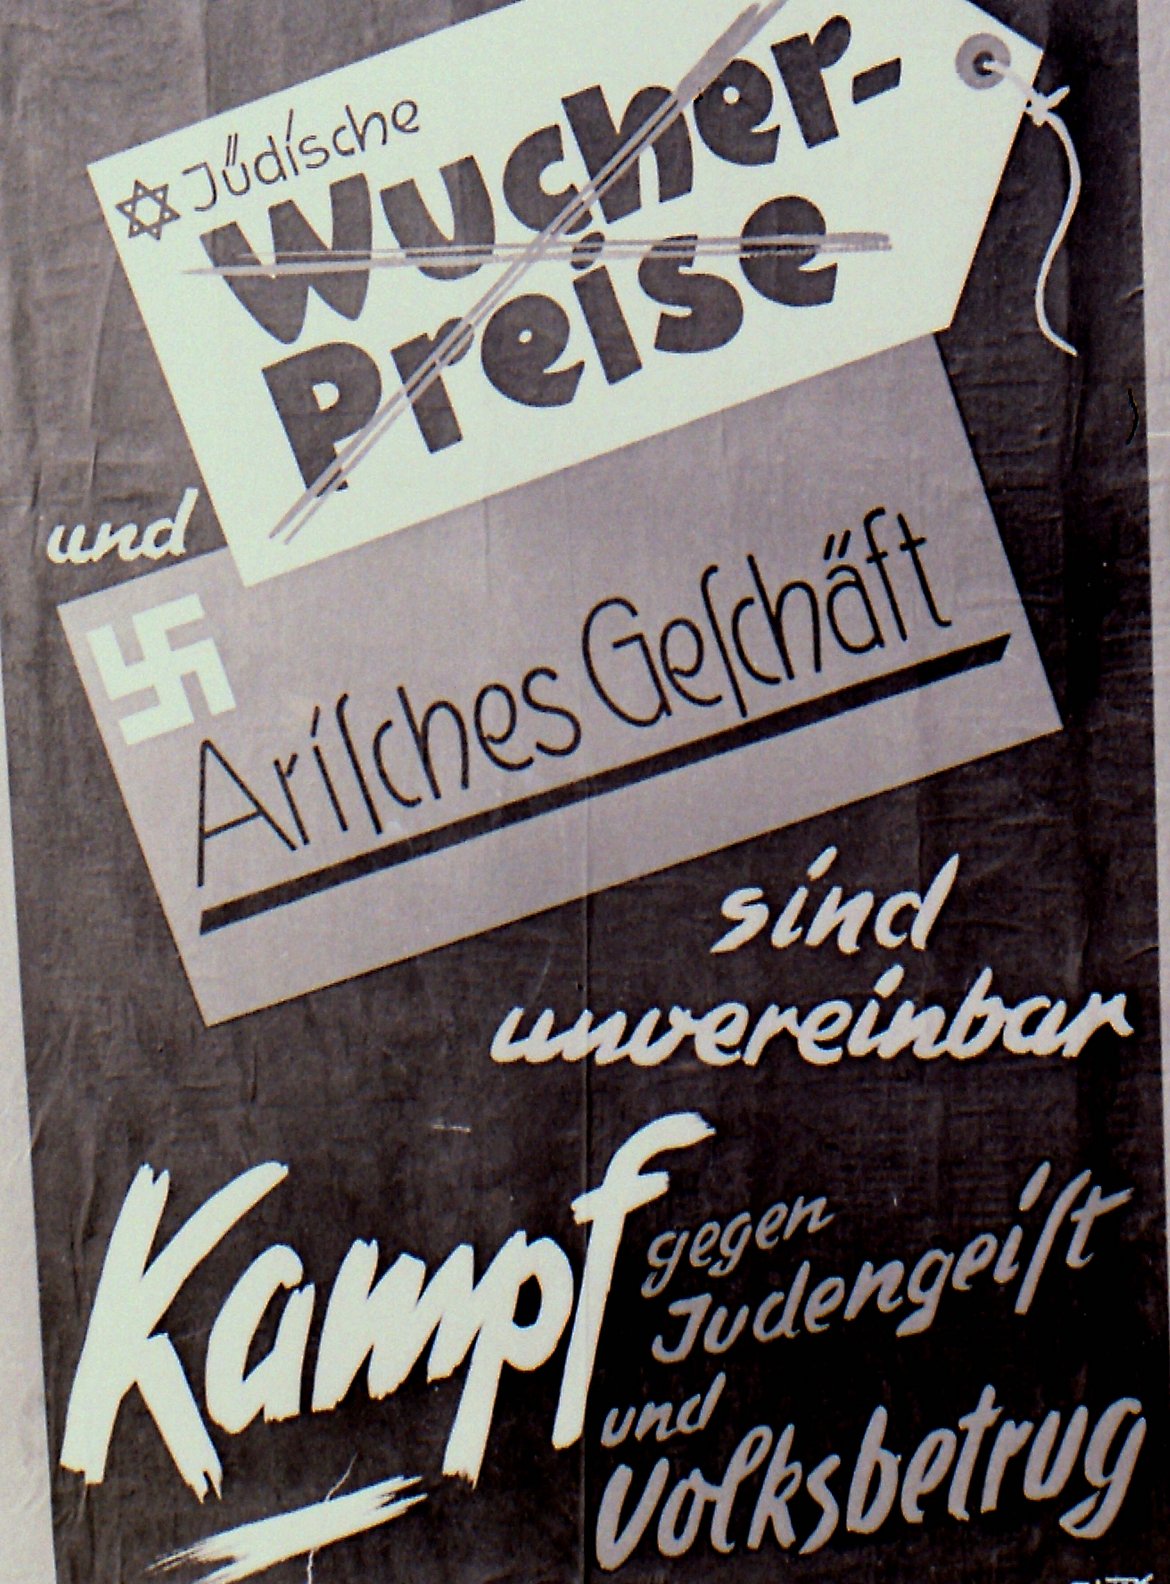 Auf dem Plakat steht: "Jüdische Wucherpreise und Arisches Geschäft sind unvereinbar" darunter "Kampf gegen Judengeist und Volksbetrug"